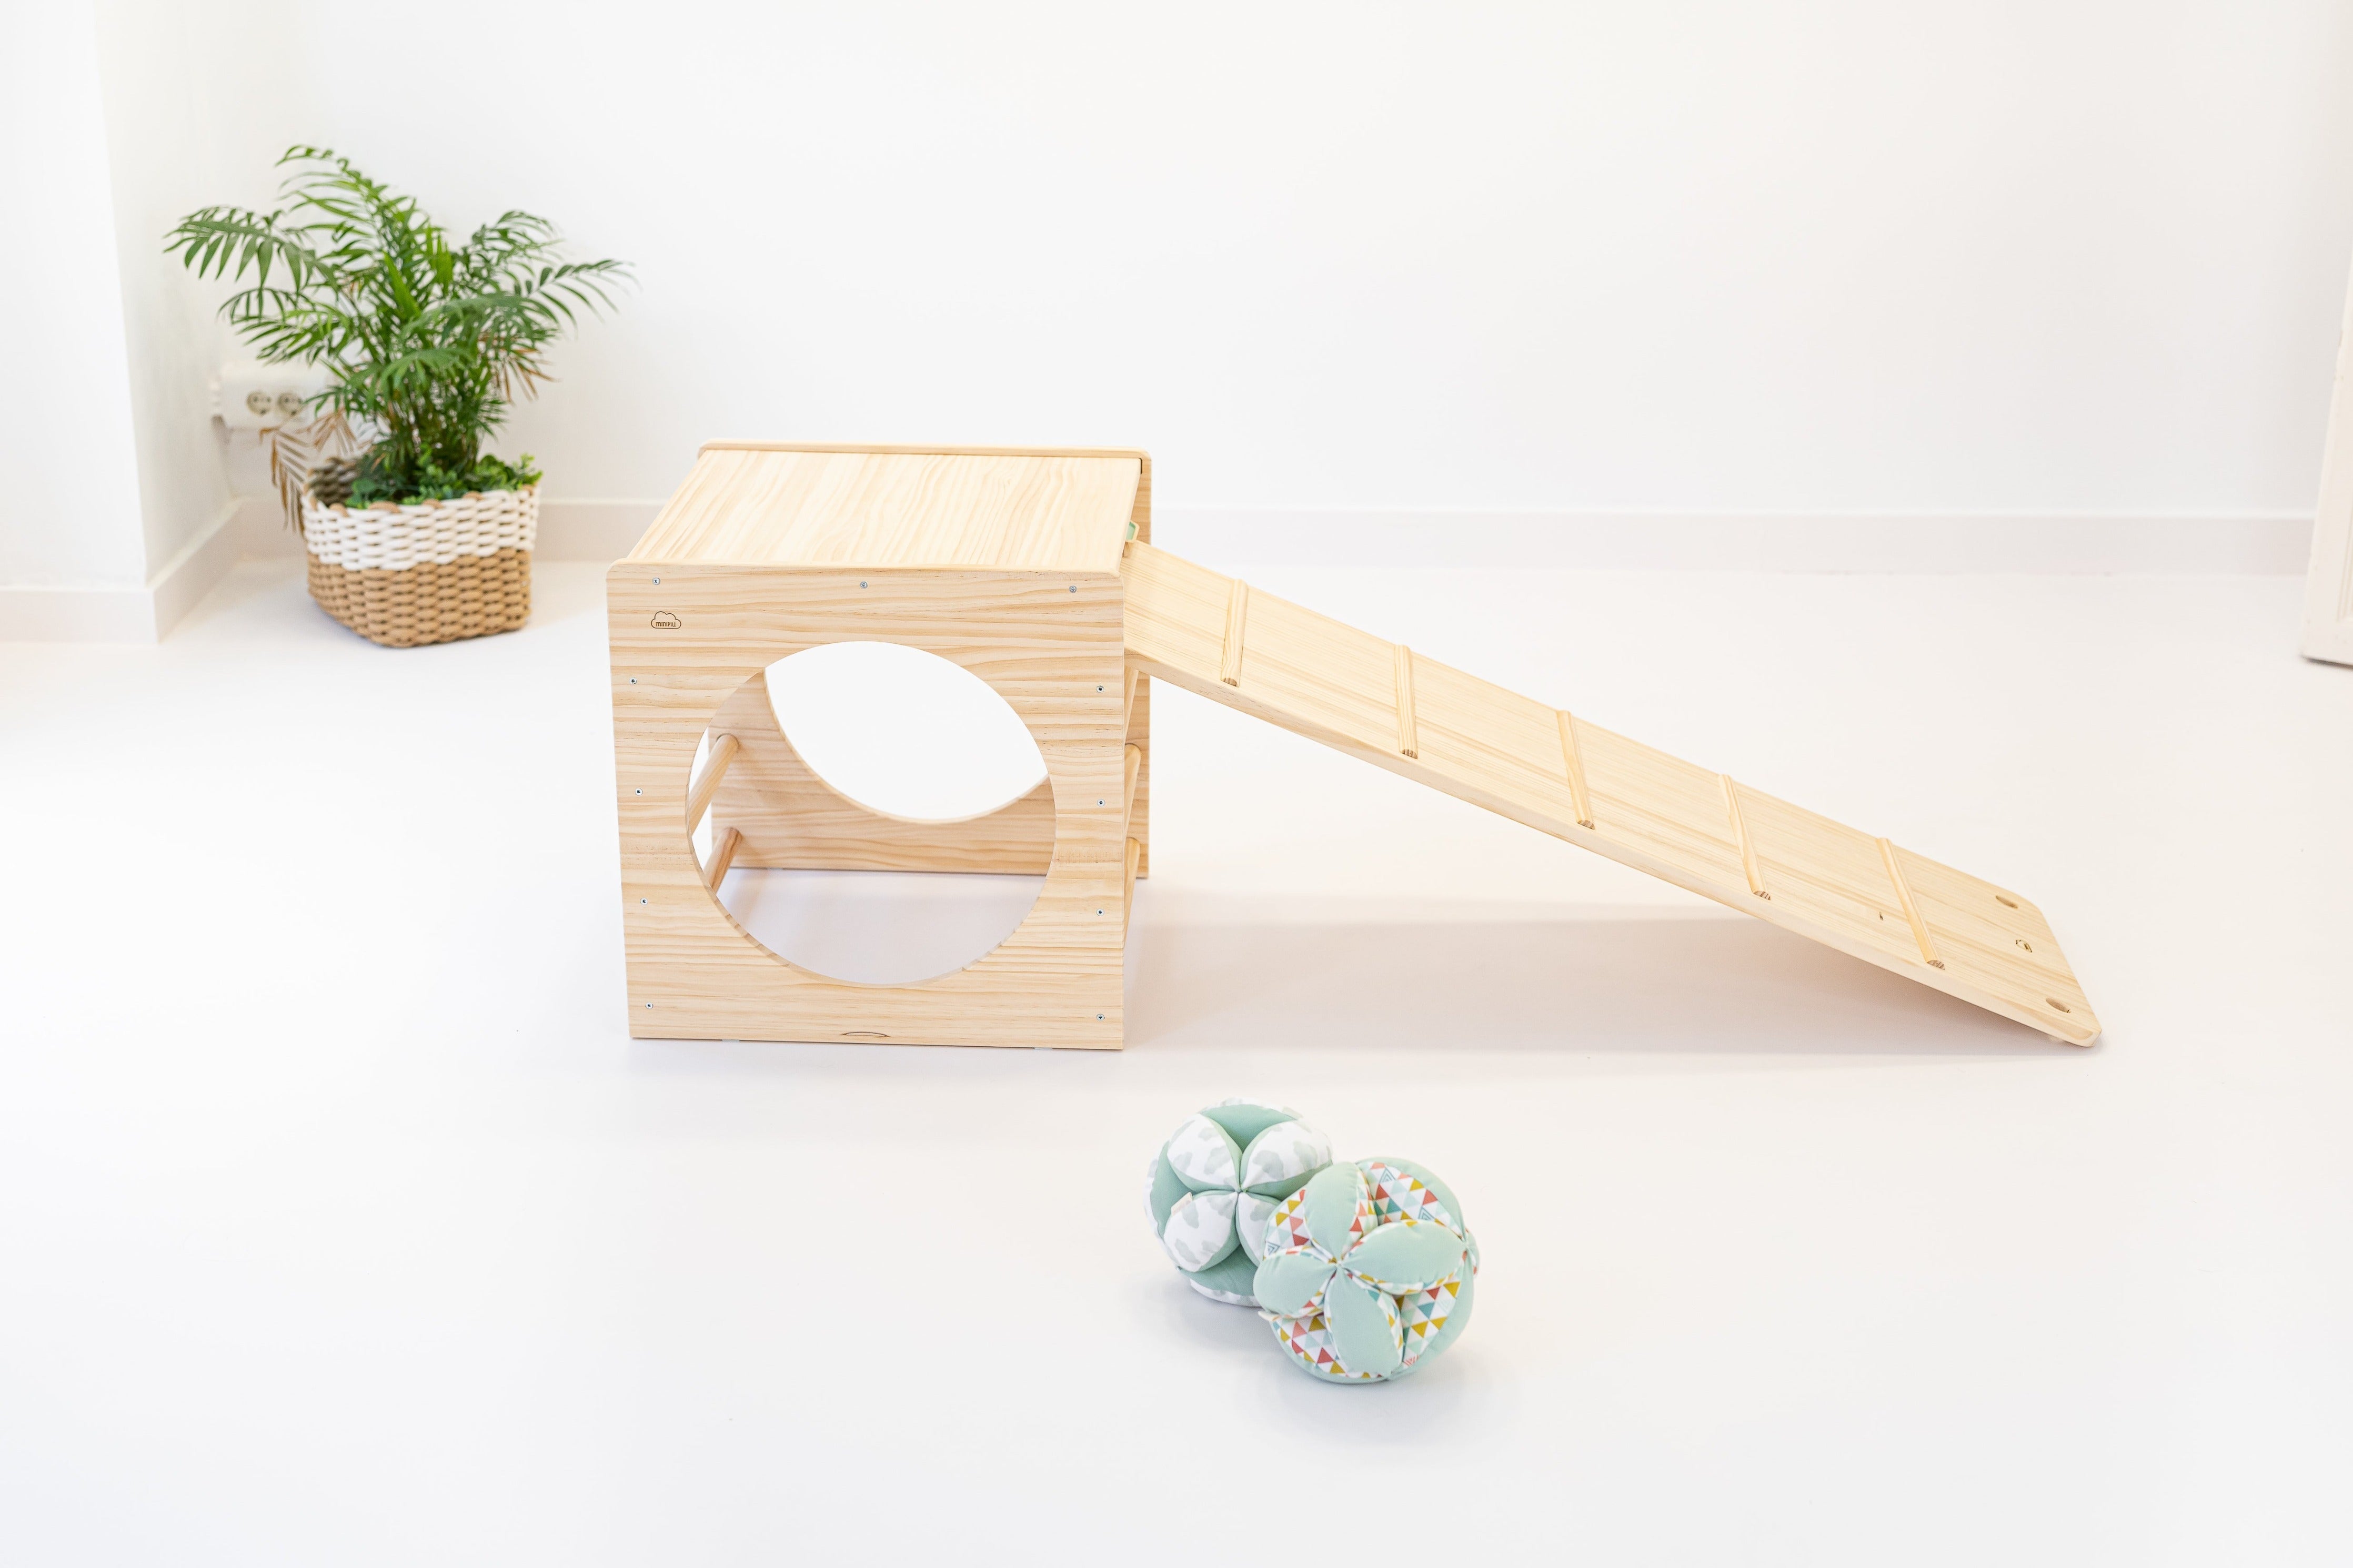 minipiu PACK · Pikler: Cubo + Rampa Inspiration für Kinder - Ein Paket mit einem Cubo und einer Rampa für unbeschwerten Spielspaß im pikler-inspirierten Design